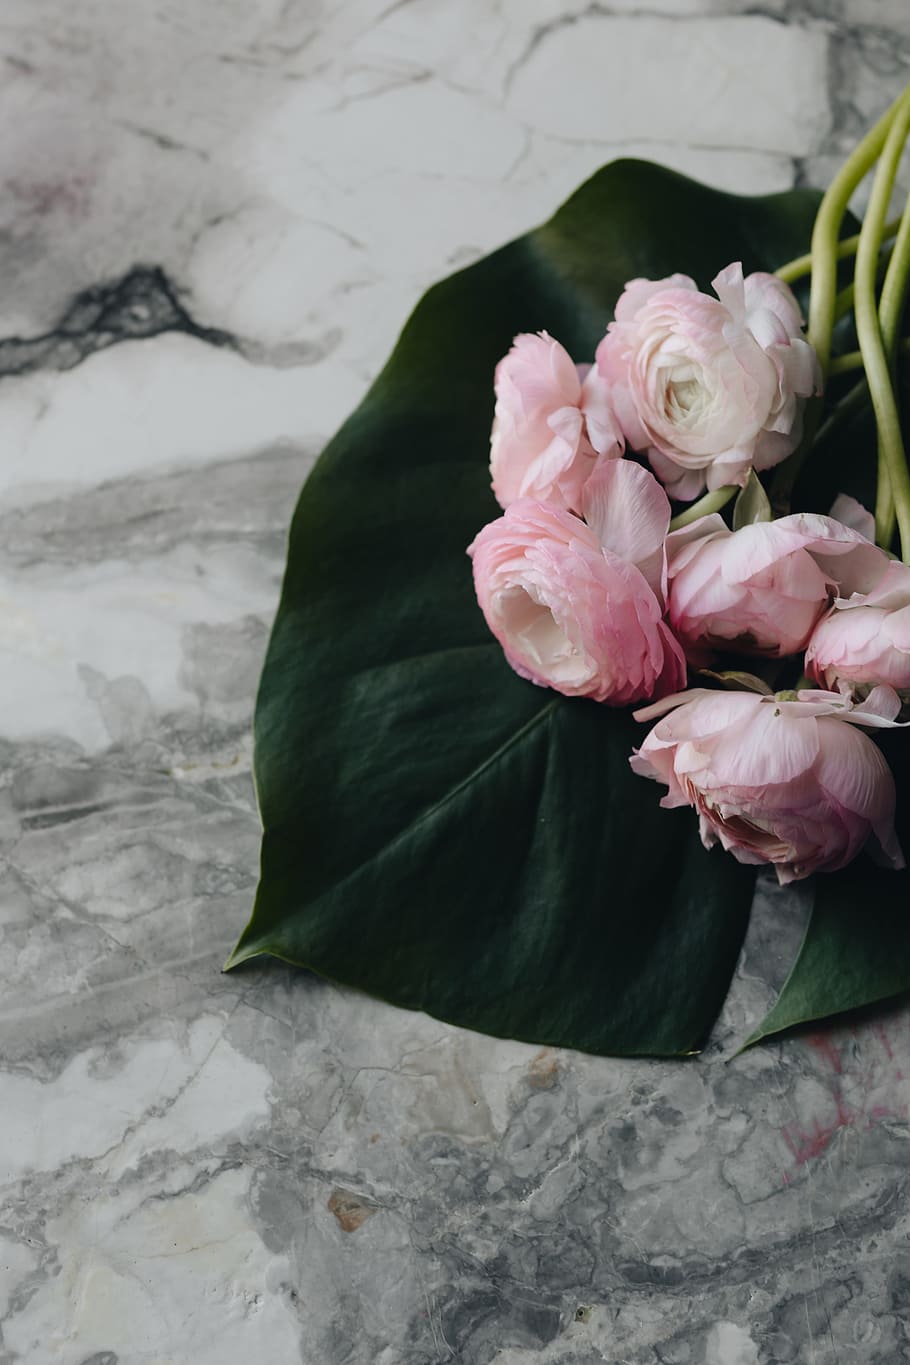 vogue poland 2 2018, &, indah, bunga buttercup, flora, lucu, majalah, bunga, mode, pink